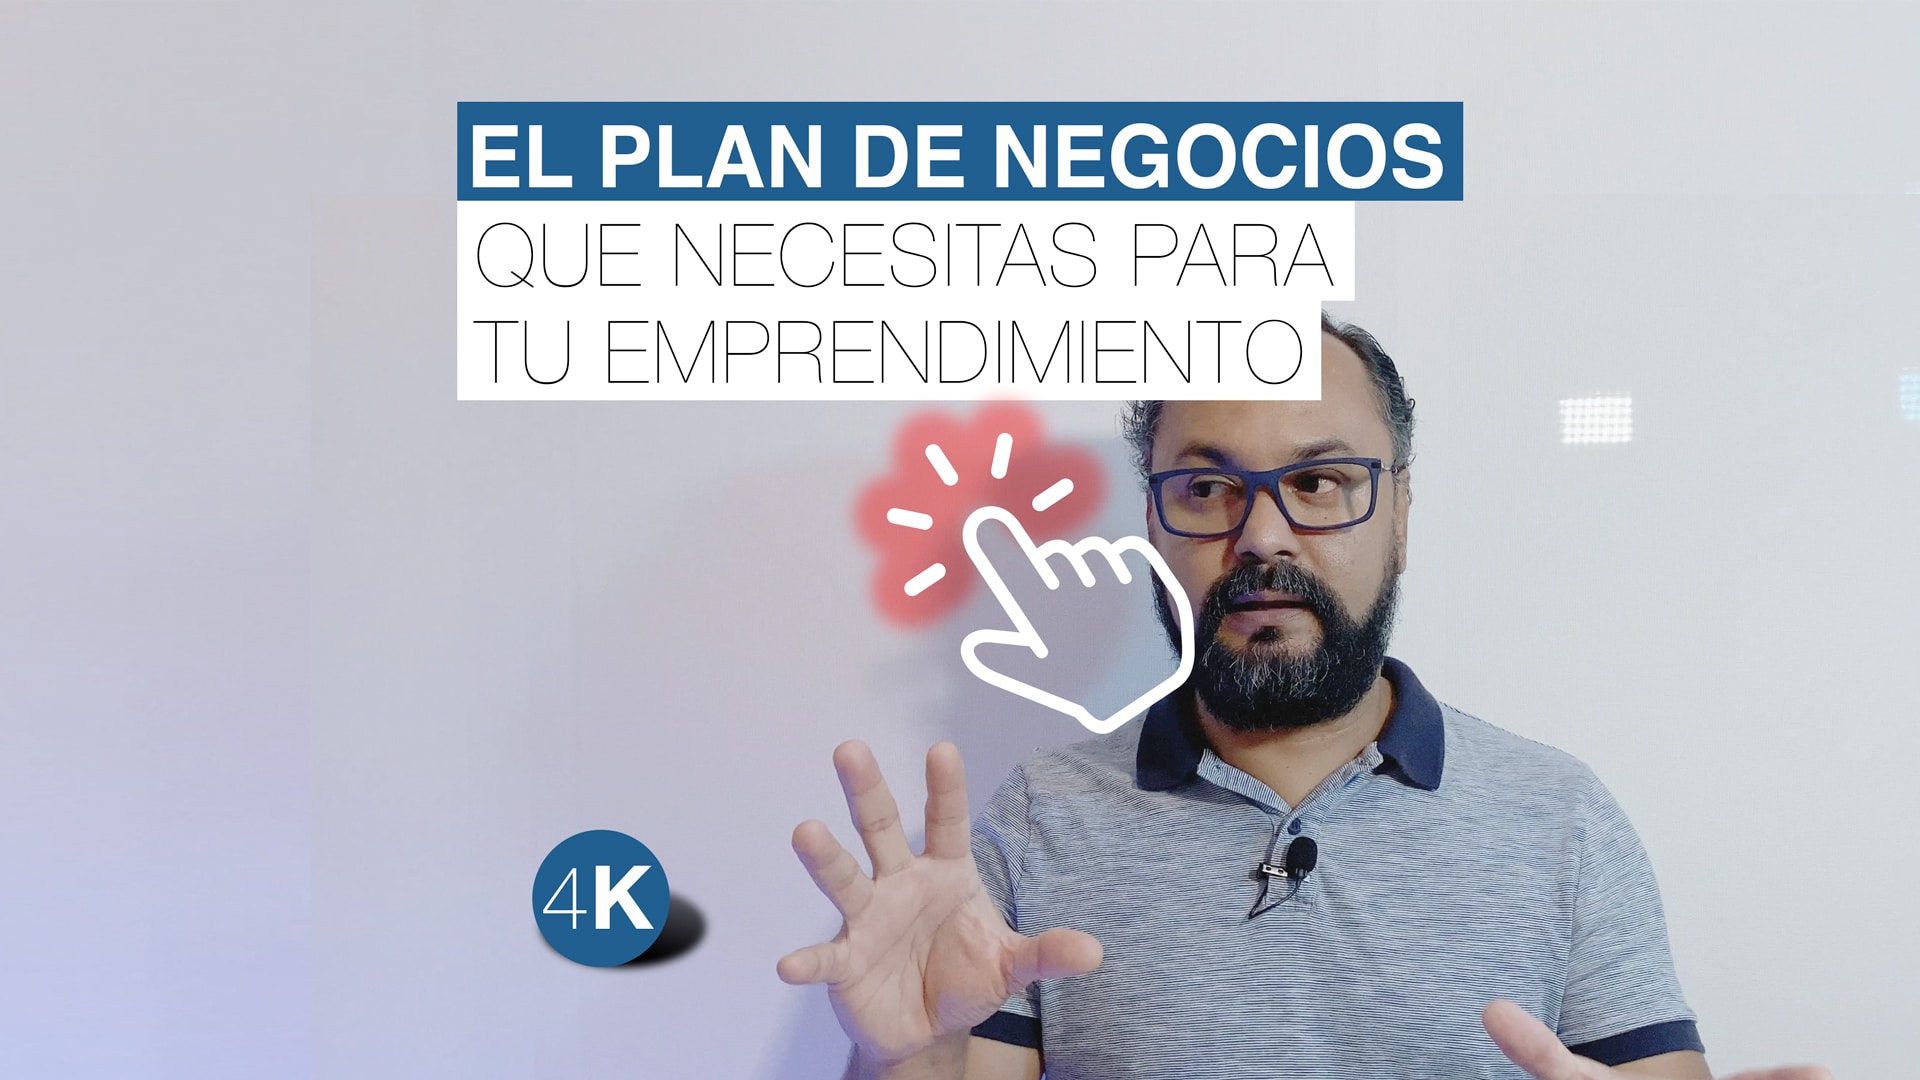 Ejemplo De Un Plan De Negocios Paso A Paso Para Emprendedores Carlos Hernández 3438